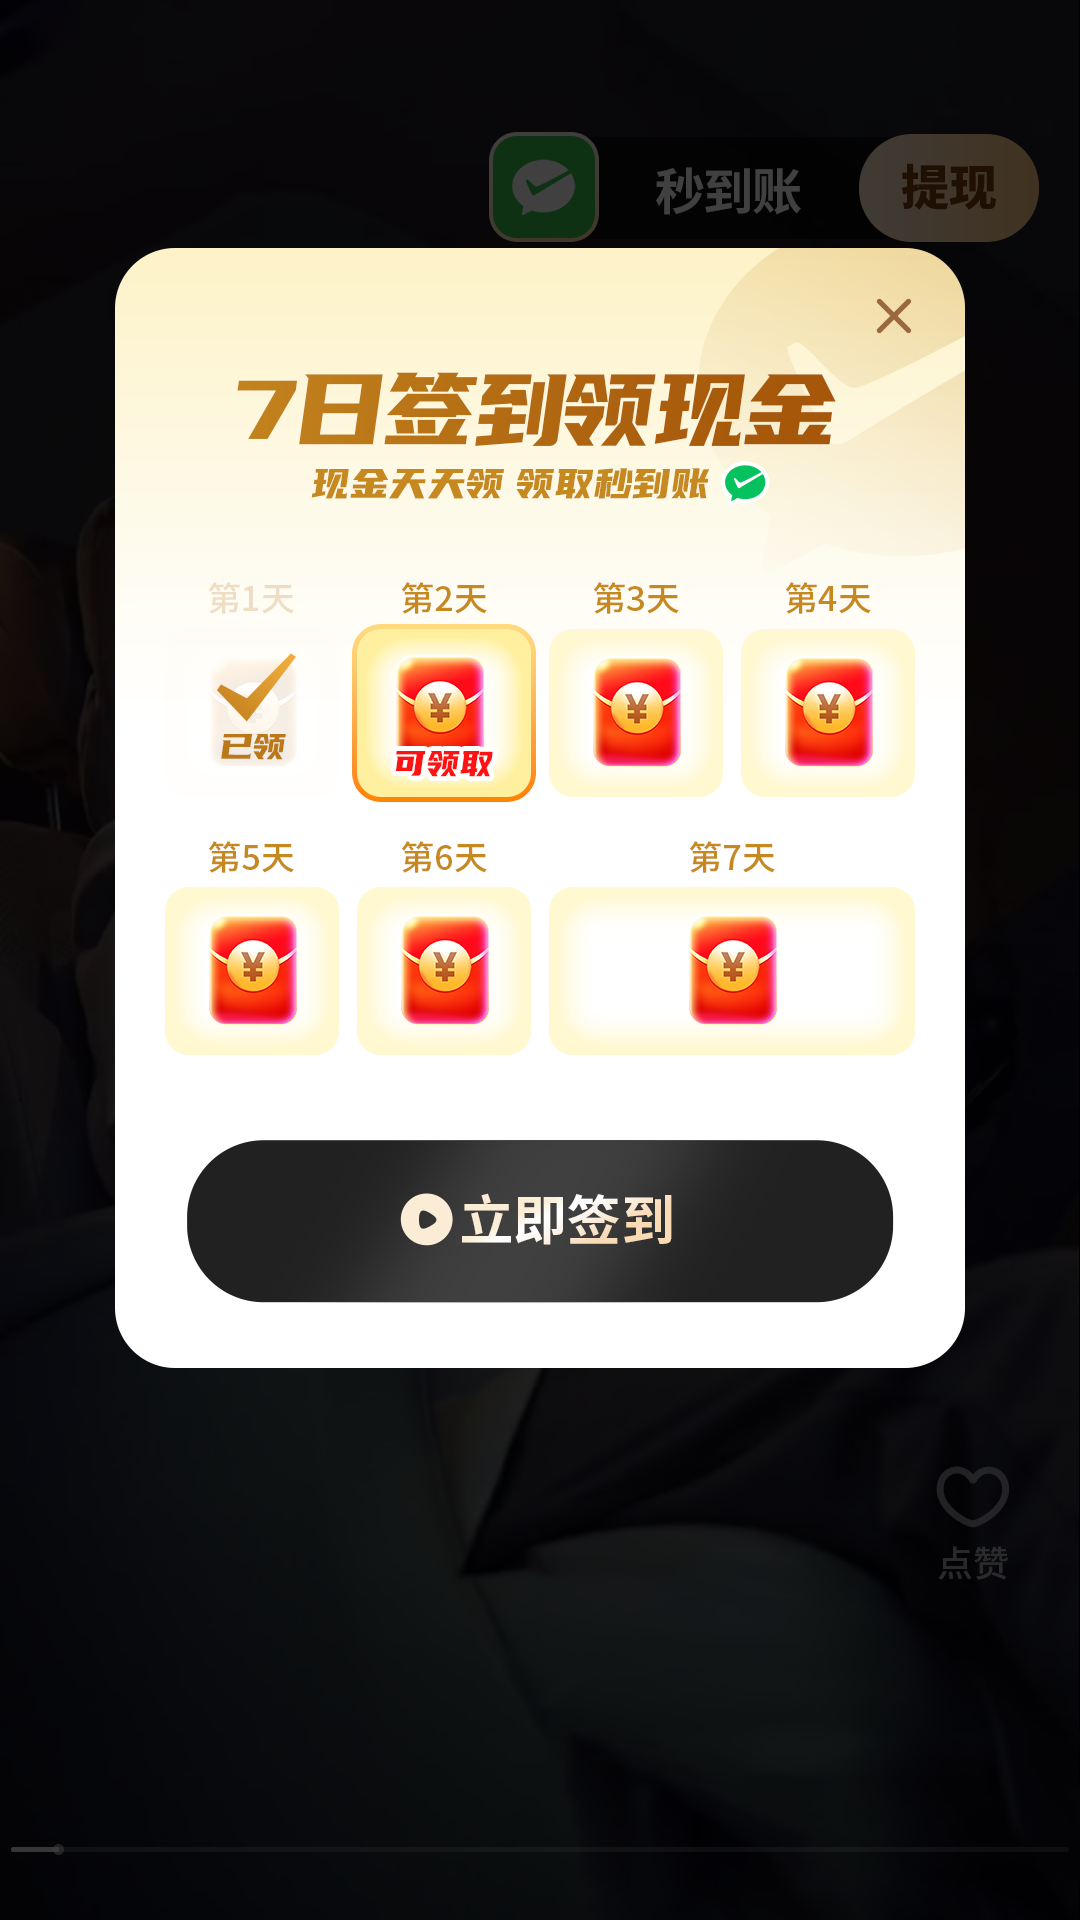 乐享短剧app下载,乐享短剧app官方版 v1.0.0